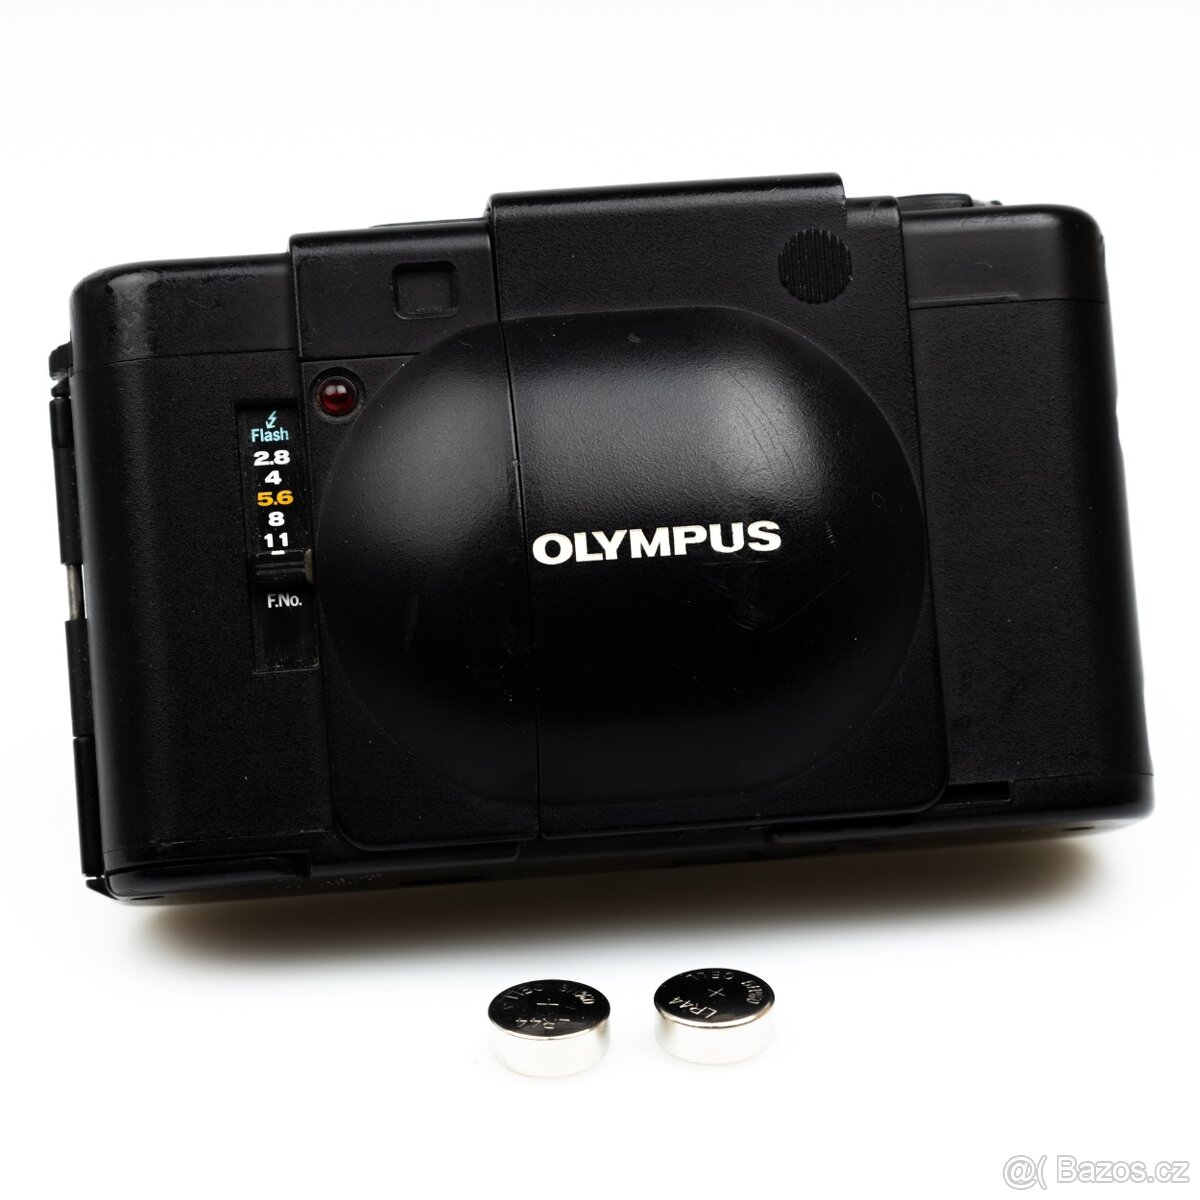 Olympus XA, objektiv Zuiko 35mm 2,8